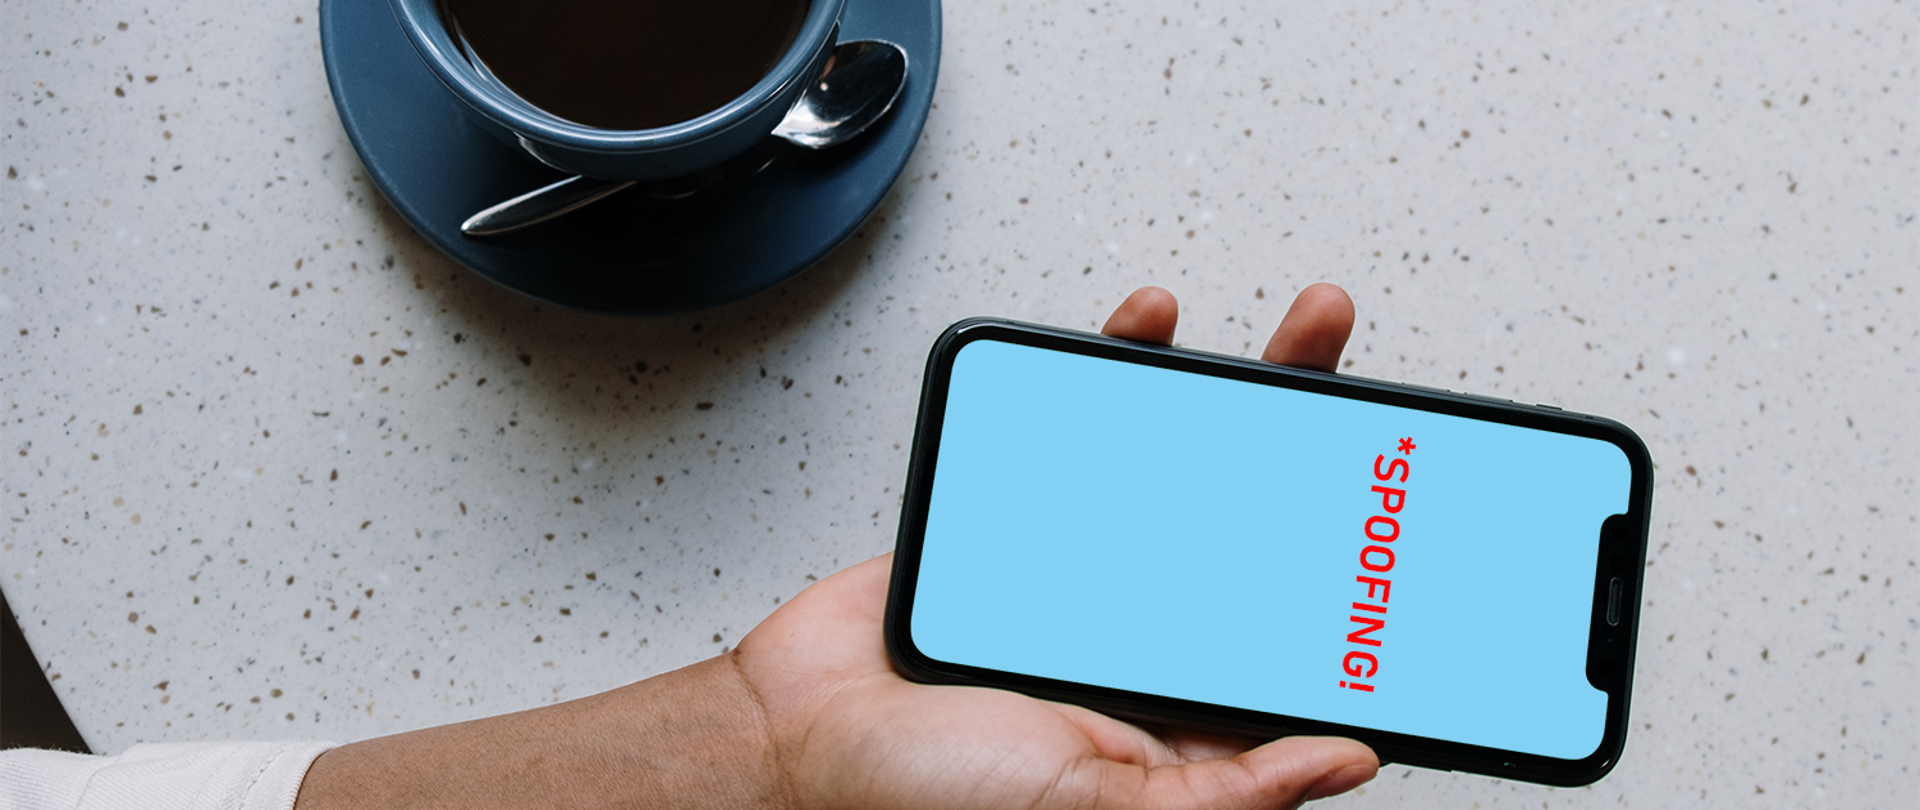 Zdjęcie przedstawia dłoń trzymającą smartfon obok stojącej filiżanki z kawą. Na ekranie smartfonu widoczny napis SPOOFING w kolorze czerwonym.